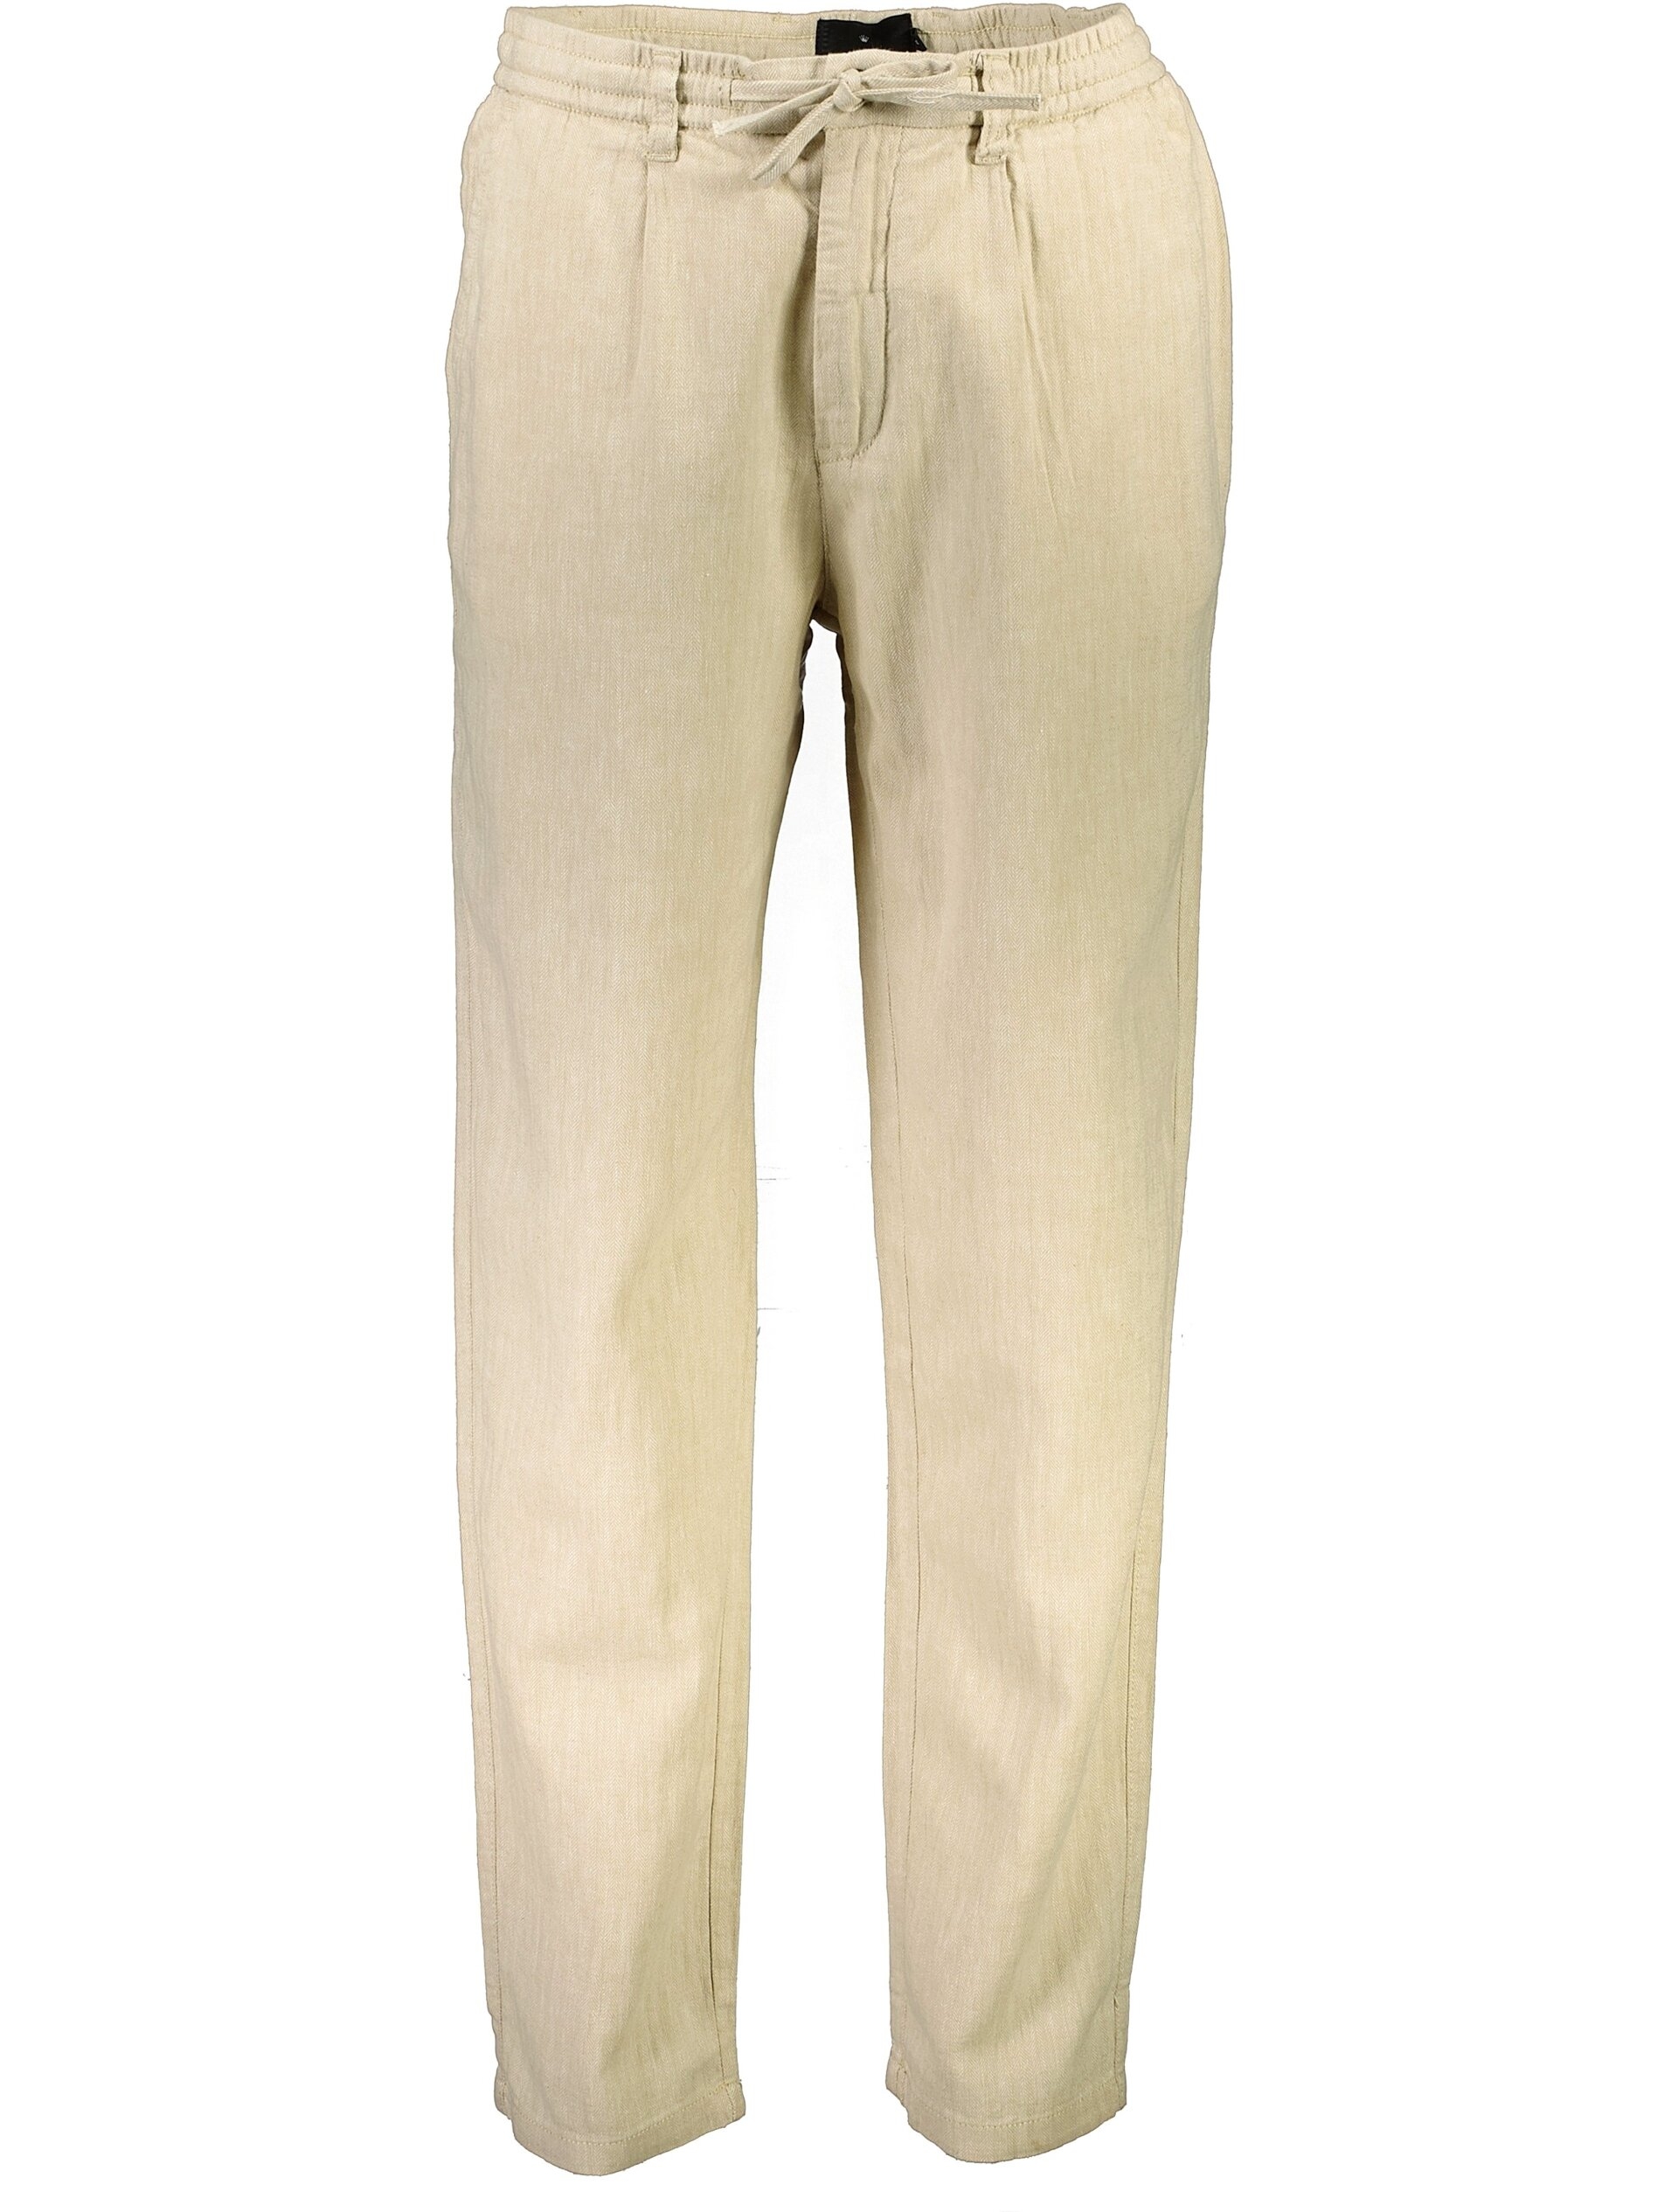 Junk de Luxe Linen pants grey / lt stone